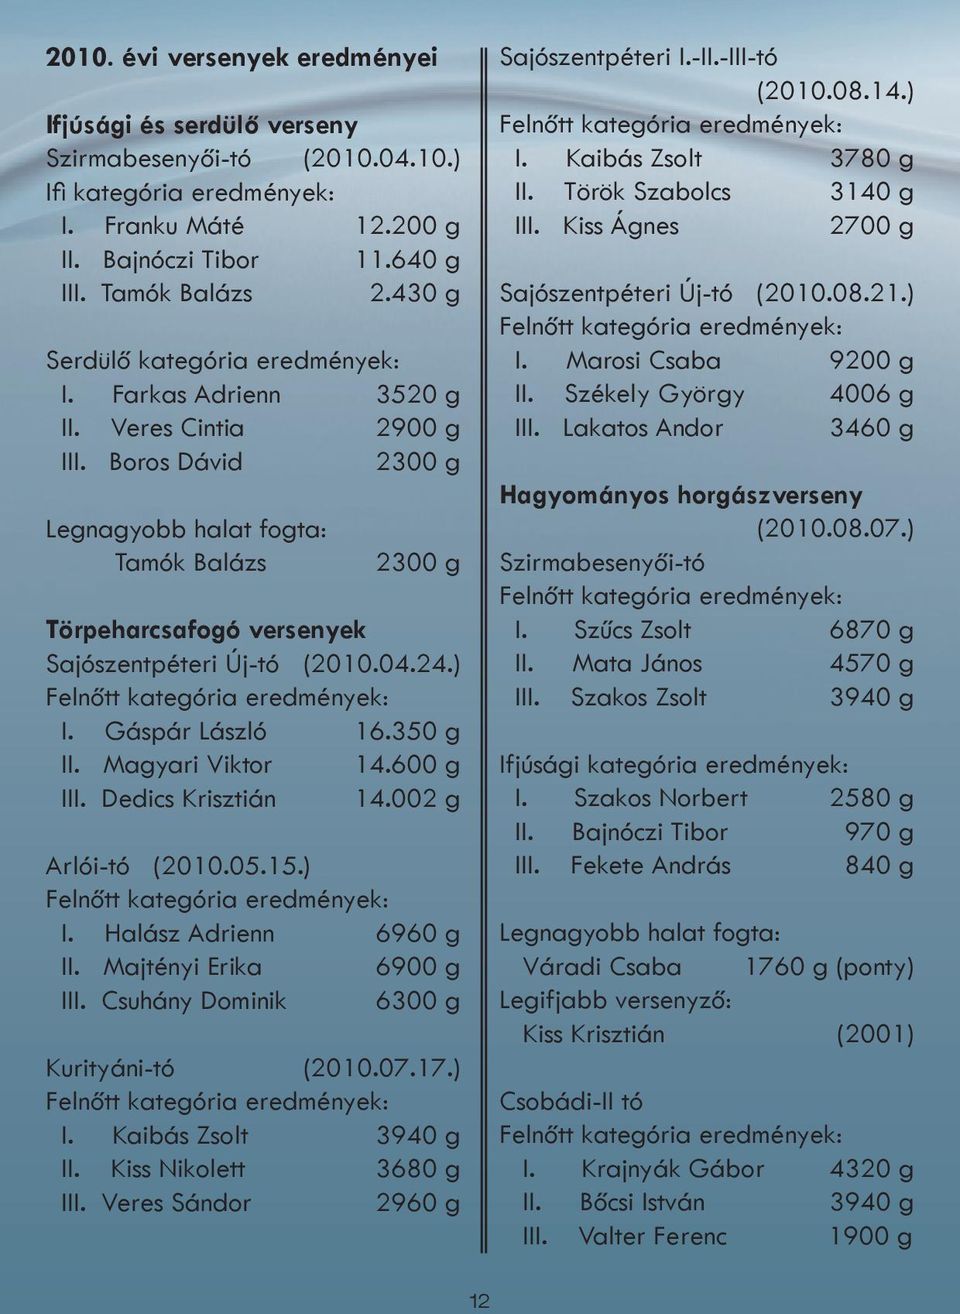 Boros Dávid 2300 g Legnagyobb halat fogta: Tamók Balázs 2300 g Törpeharcsafogó versenyek Sajószentpéteri Új-tó (2010.04.24.) Felnőtt kategória eredmények: I. Gáspár László 16.350 g II.